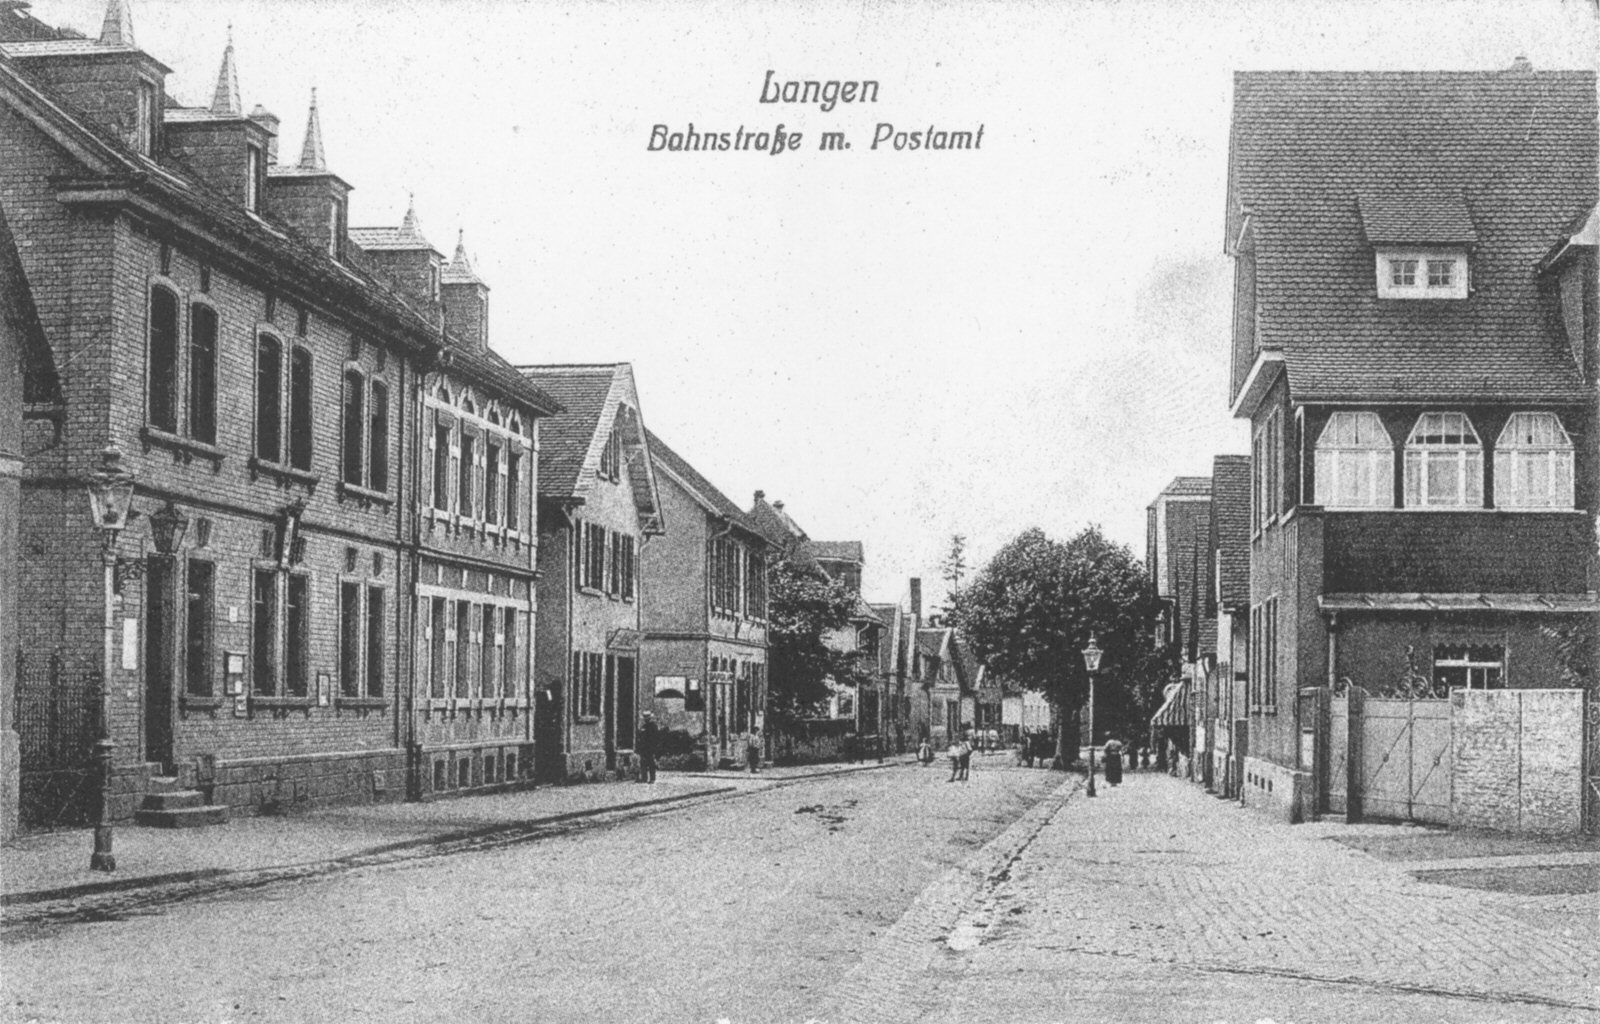 http://wiki-langen.de/images/2/26/1914_Bahnstra%C3%9Fe.jpg